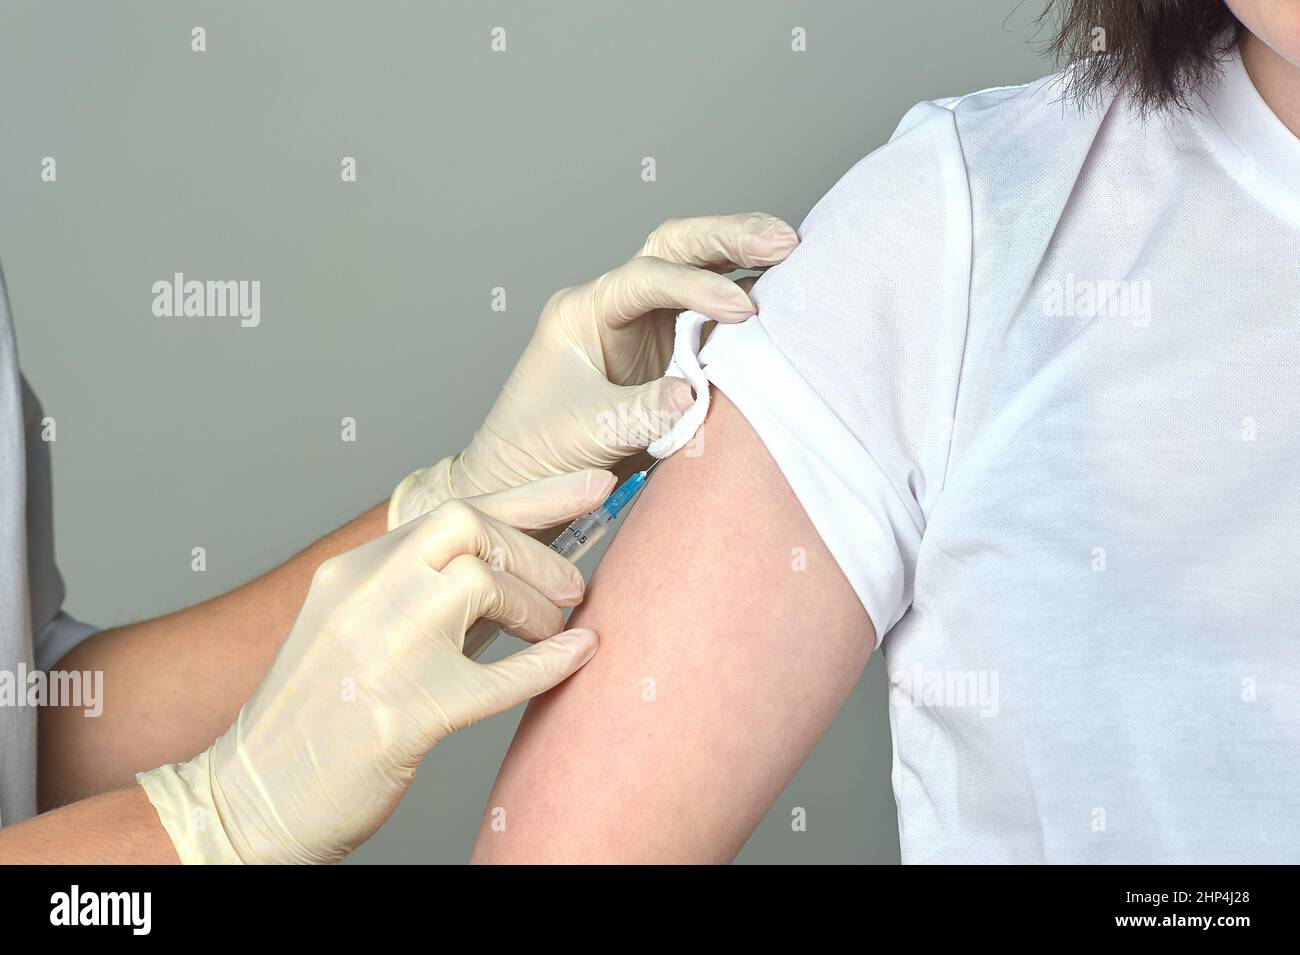 Gros plan d'une infirmière donnant un coup de feu à l'épaule d'un patient. Injection du vaccin contre le covid. Photo de haute qualité Banque D'Images